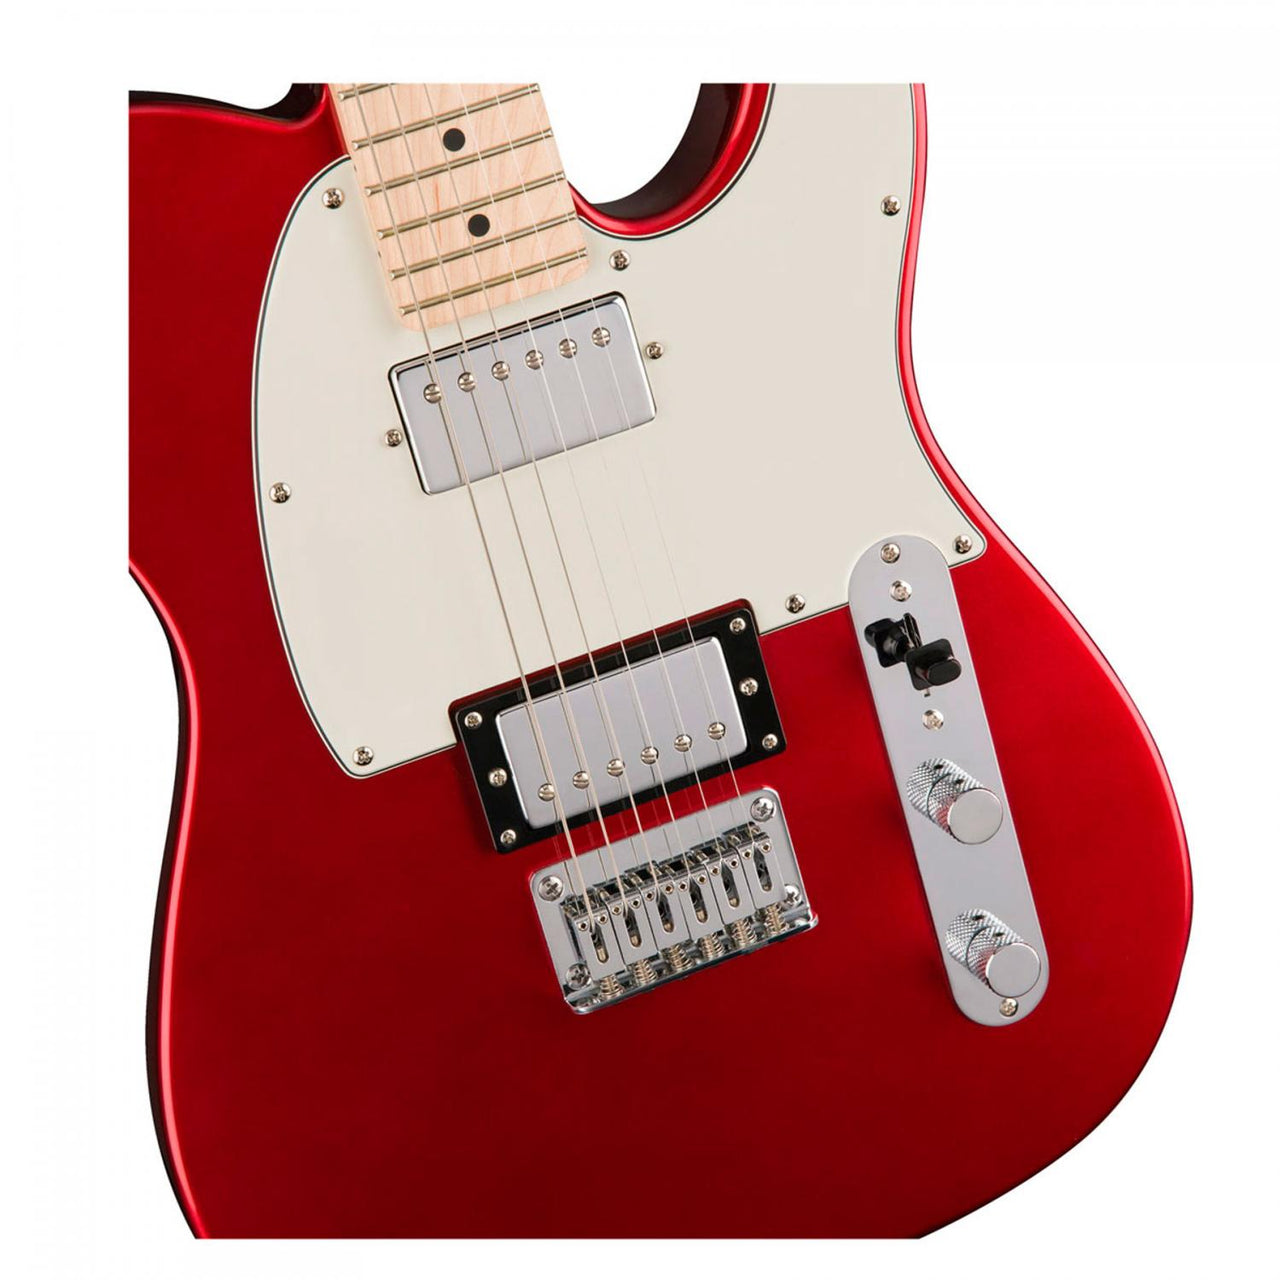 Guitarra Electrica Fender Sq Cont Tele Hh Mn Dmr, 0371222525